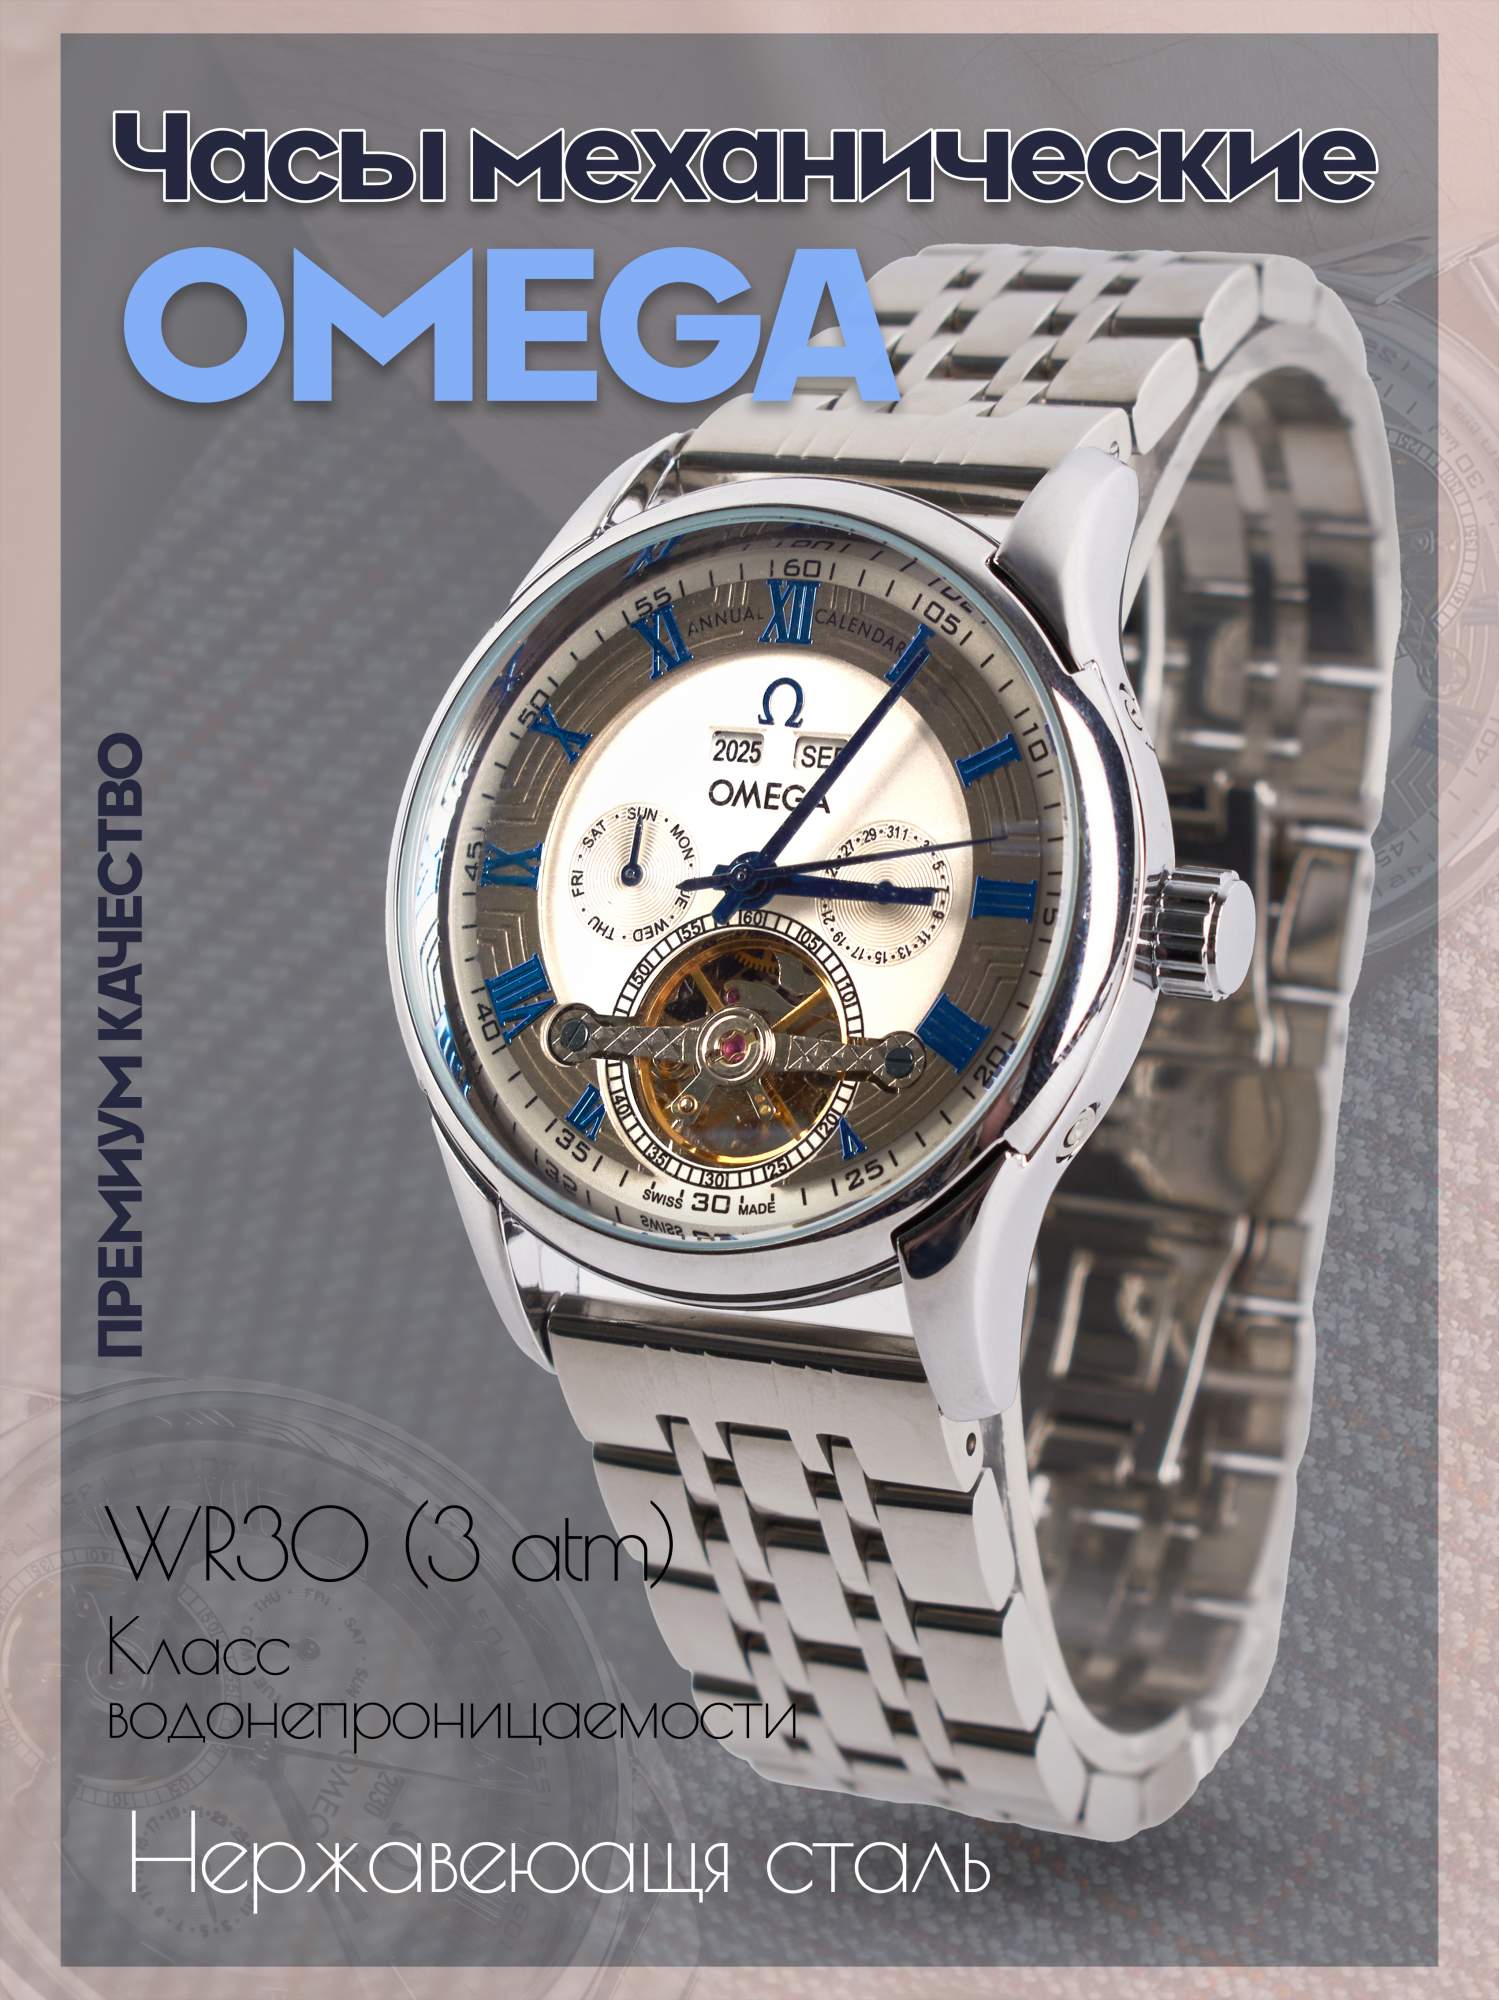 Наручные часы мужские Omega Omg-170 - купить в Rayhan, цена на Мегамаркет